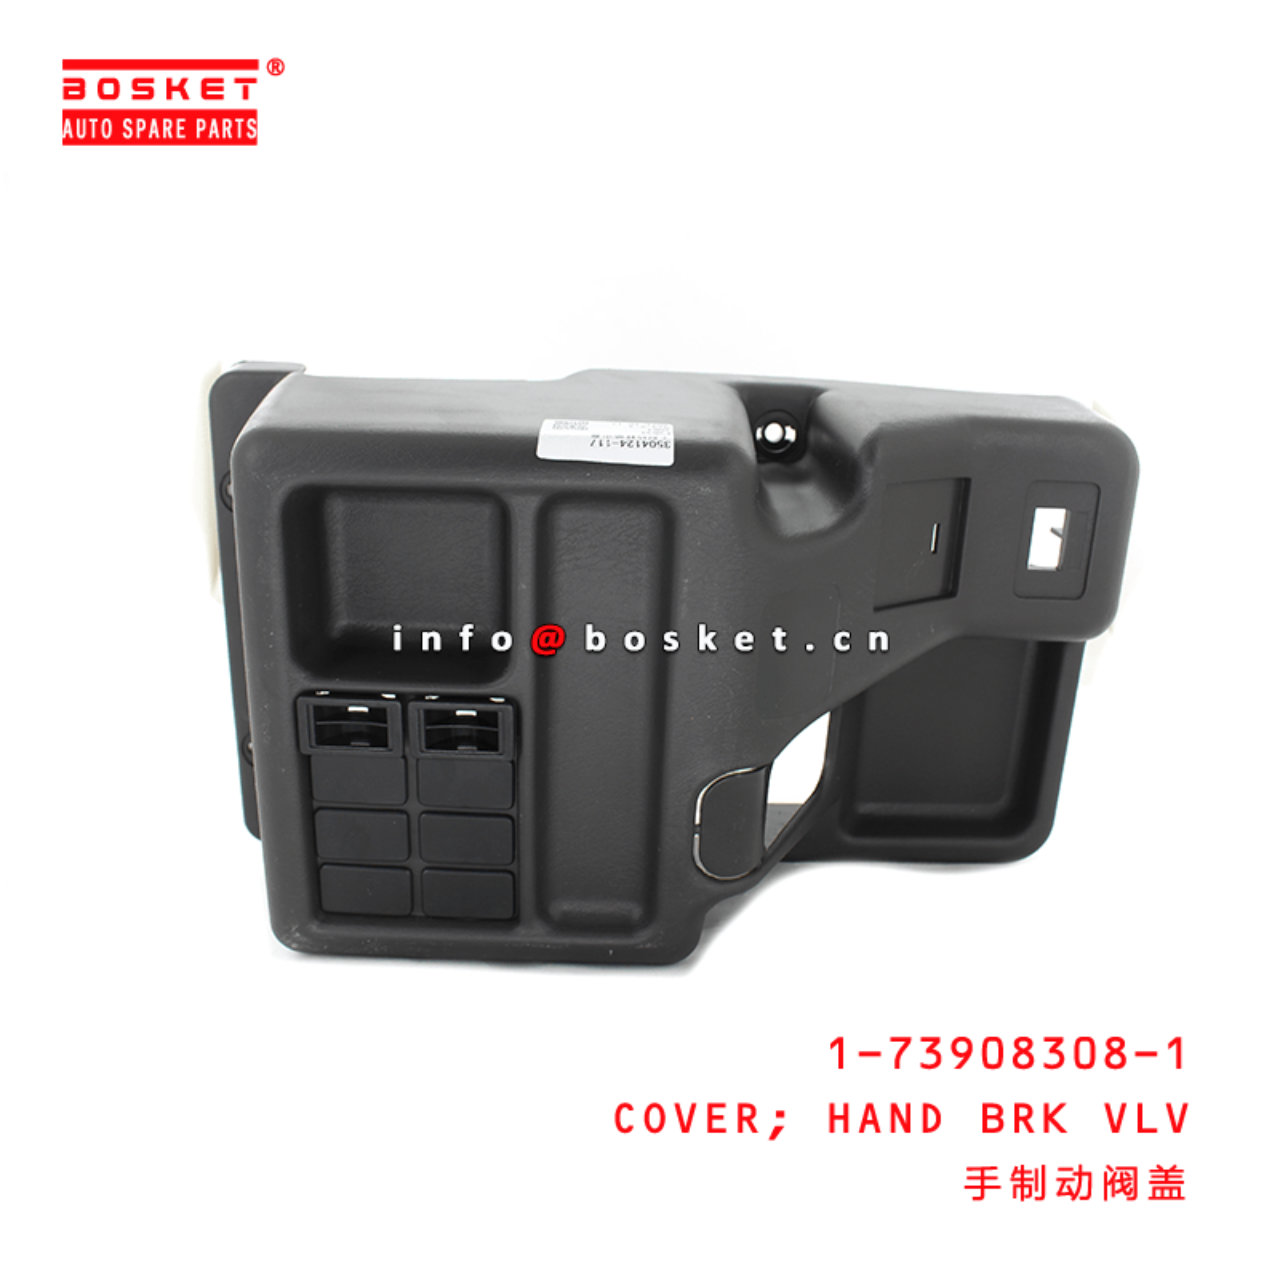 1-73908308-1 Hand Brake Valve Cover Suitable for ISUZU FVR34 6HK1 1739083081